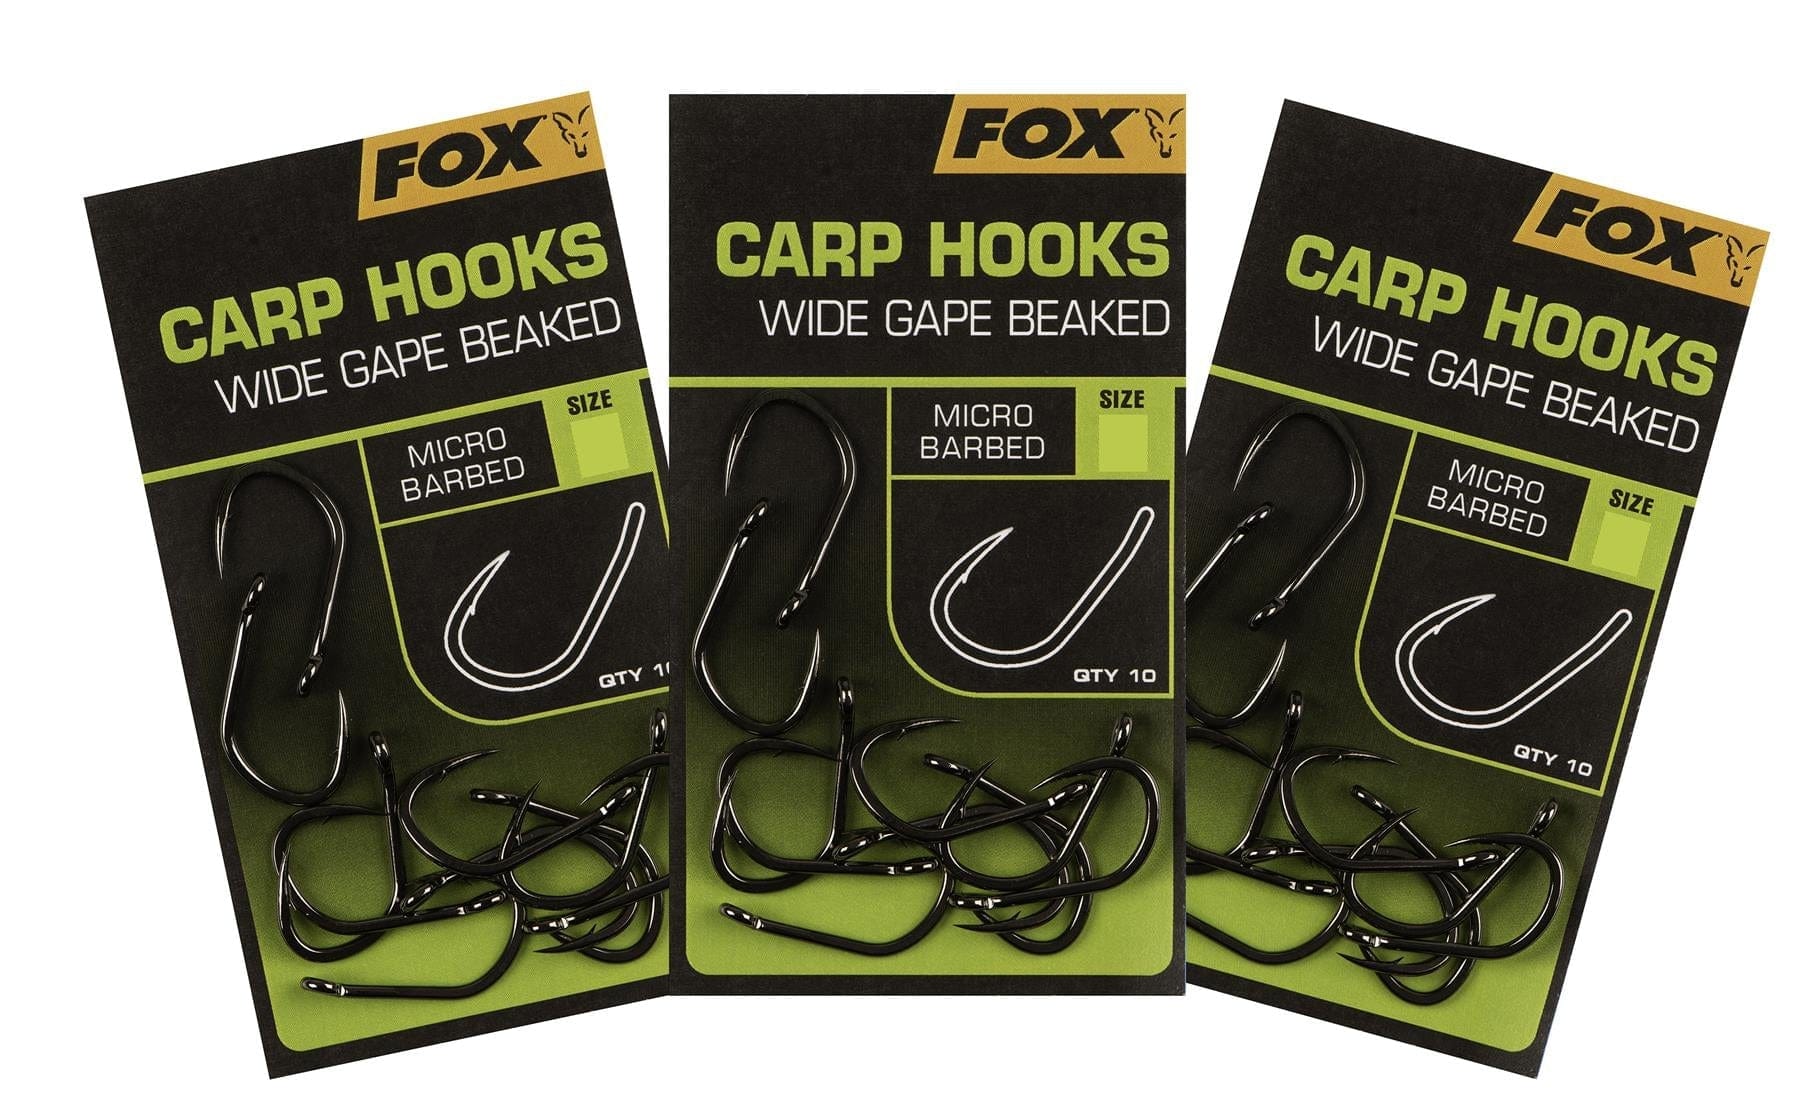 FOX Carp Hooks - Wide Gape Beaked - 3 Packs - Size 4, 6, 8 - 1 pack of each.